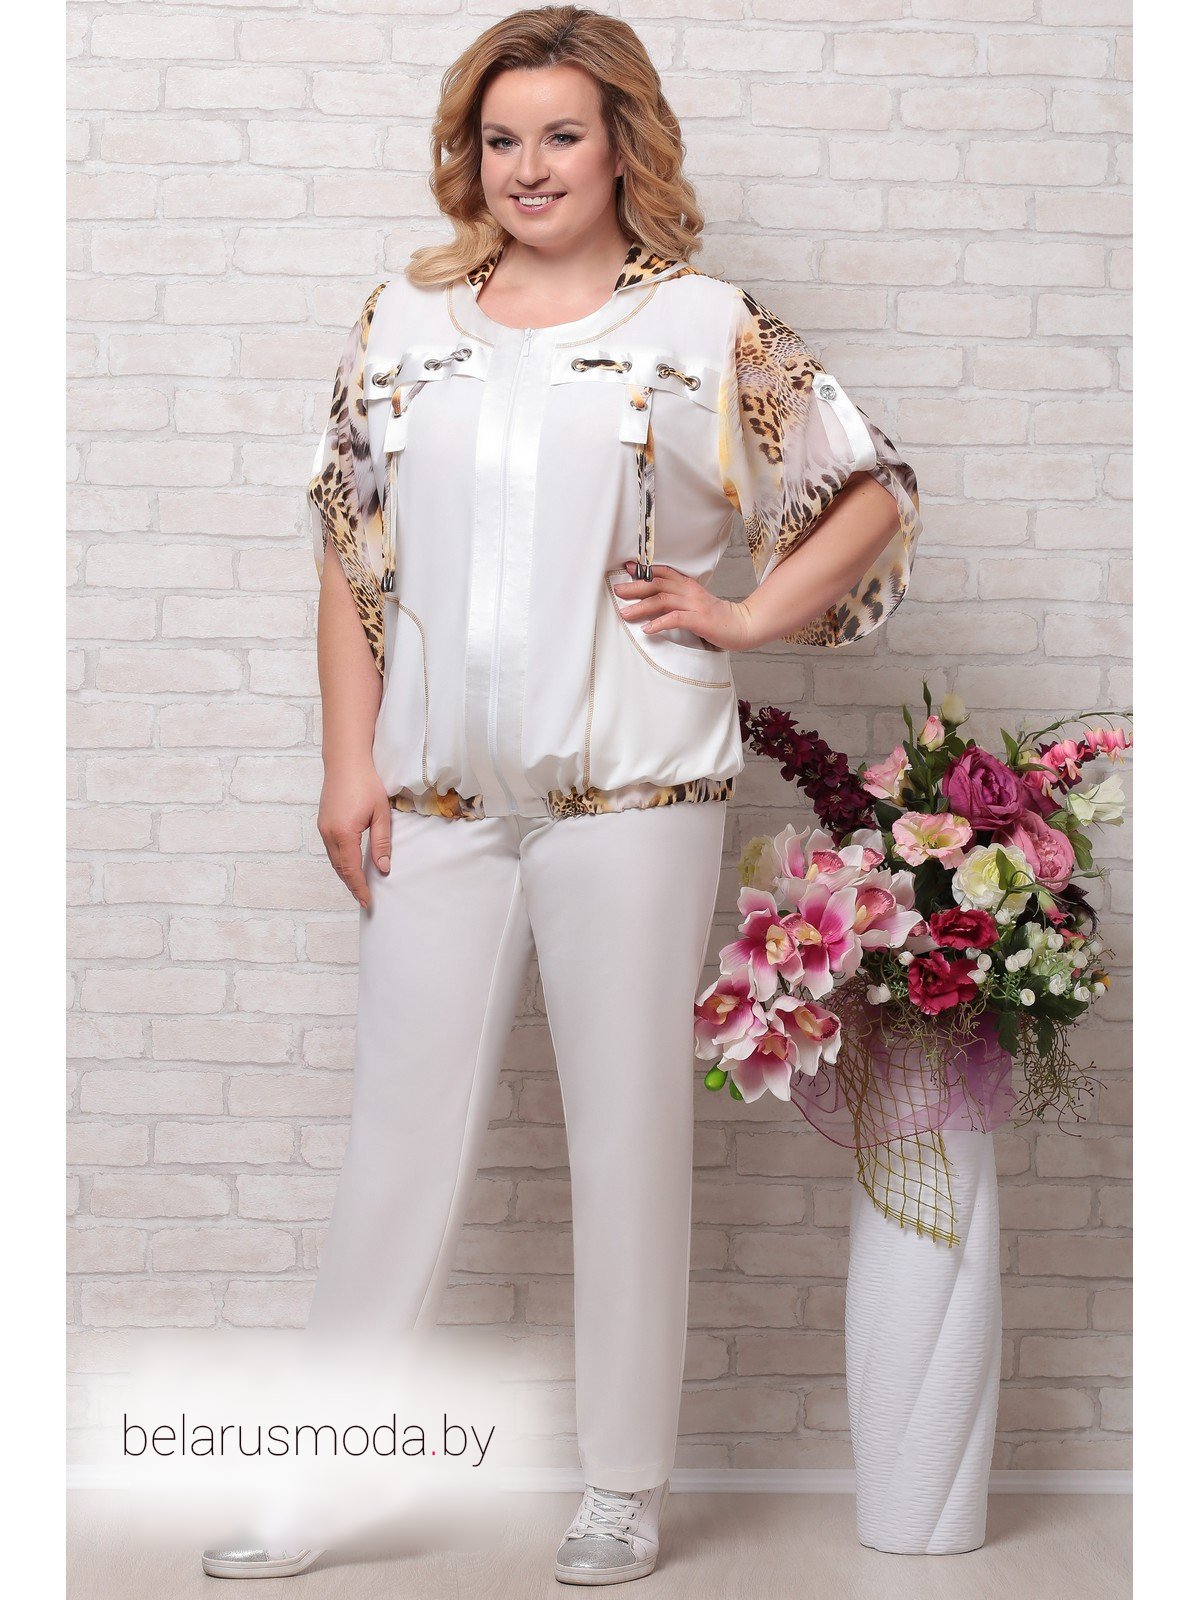 Озон летние костюмы женские больших размеров. Комплект Aira Style. Комплект брючный Aira Style. Белорусские брючные костюмы Aira Style 650. Костюм Aira Style модель 764.